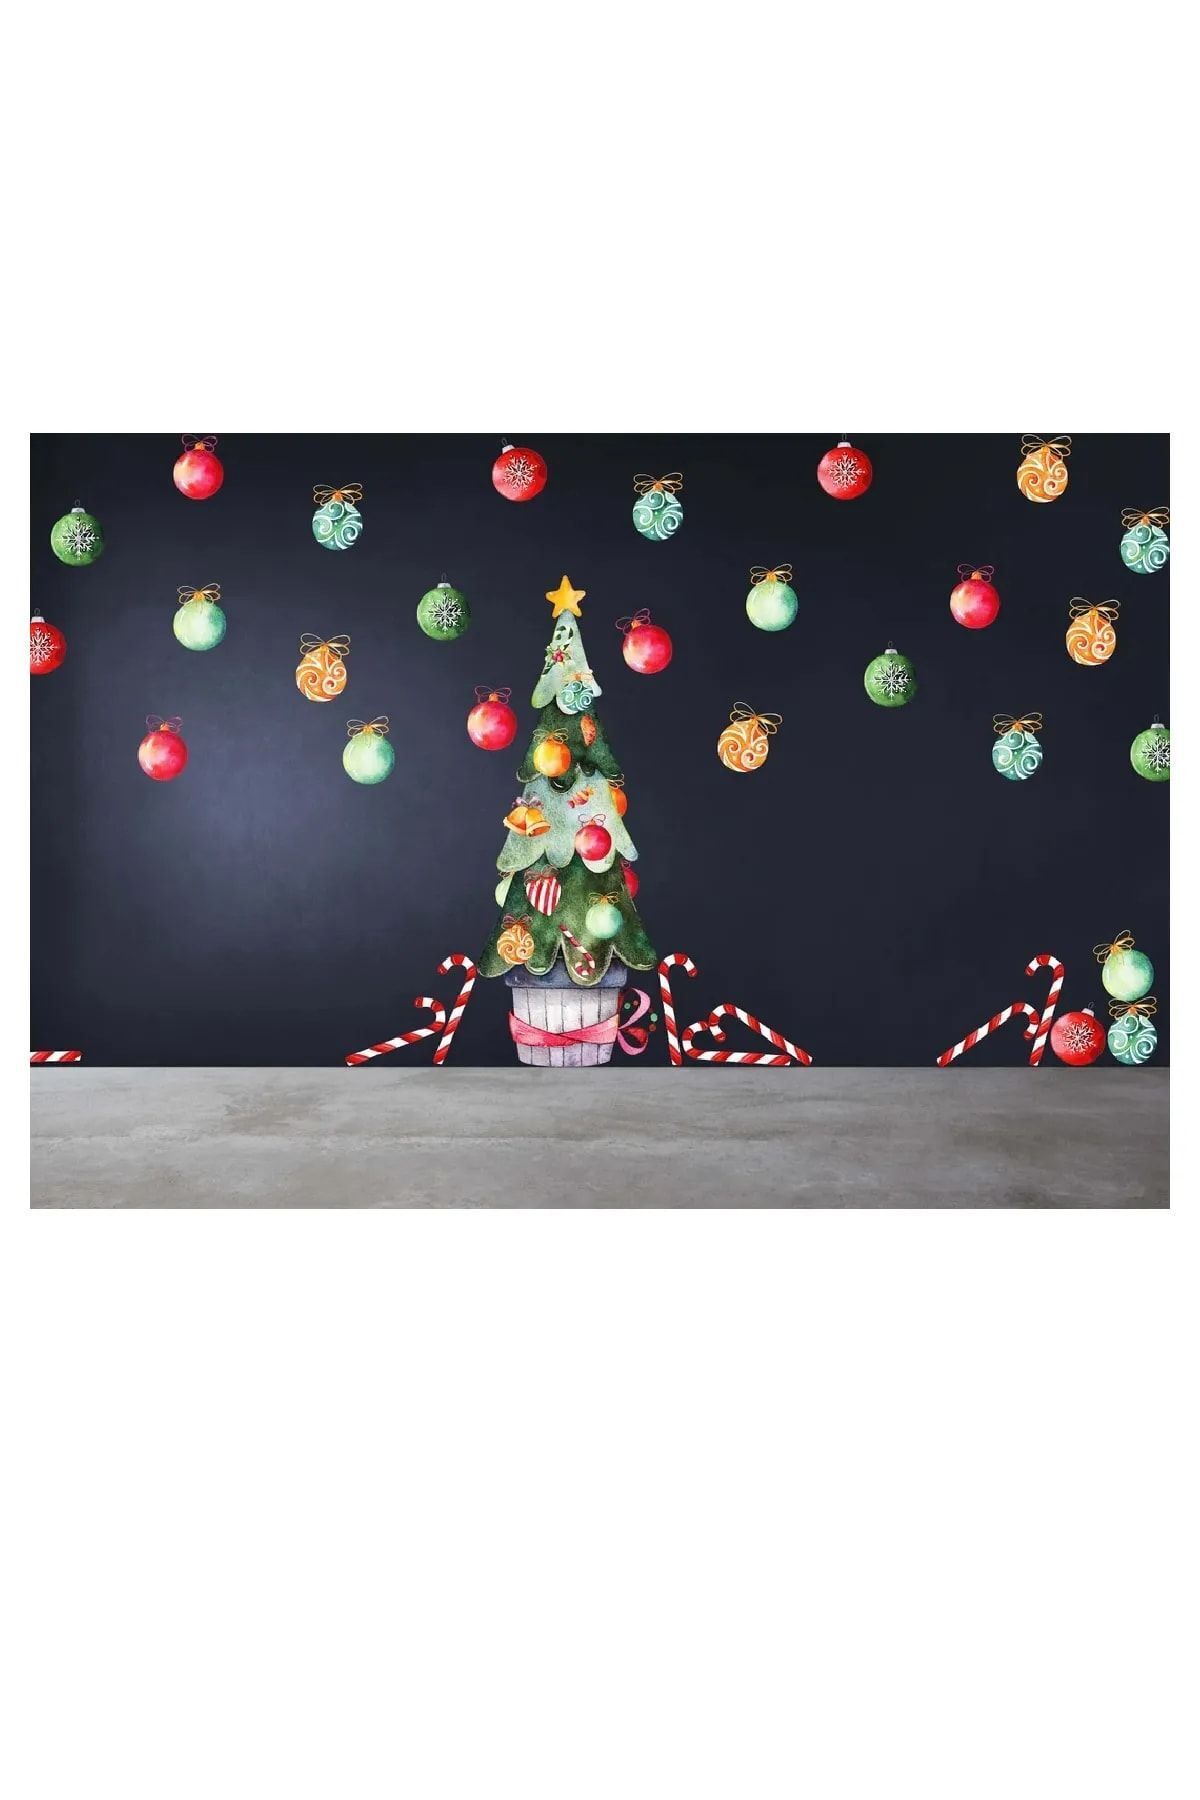 Kt Grup Hoşgeldin Yeni Yıl Merry Christmas Pastel Renkler Dekoratif Sticker Seti